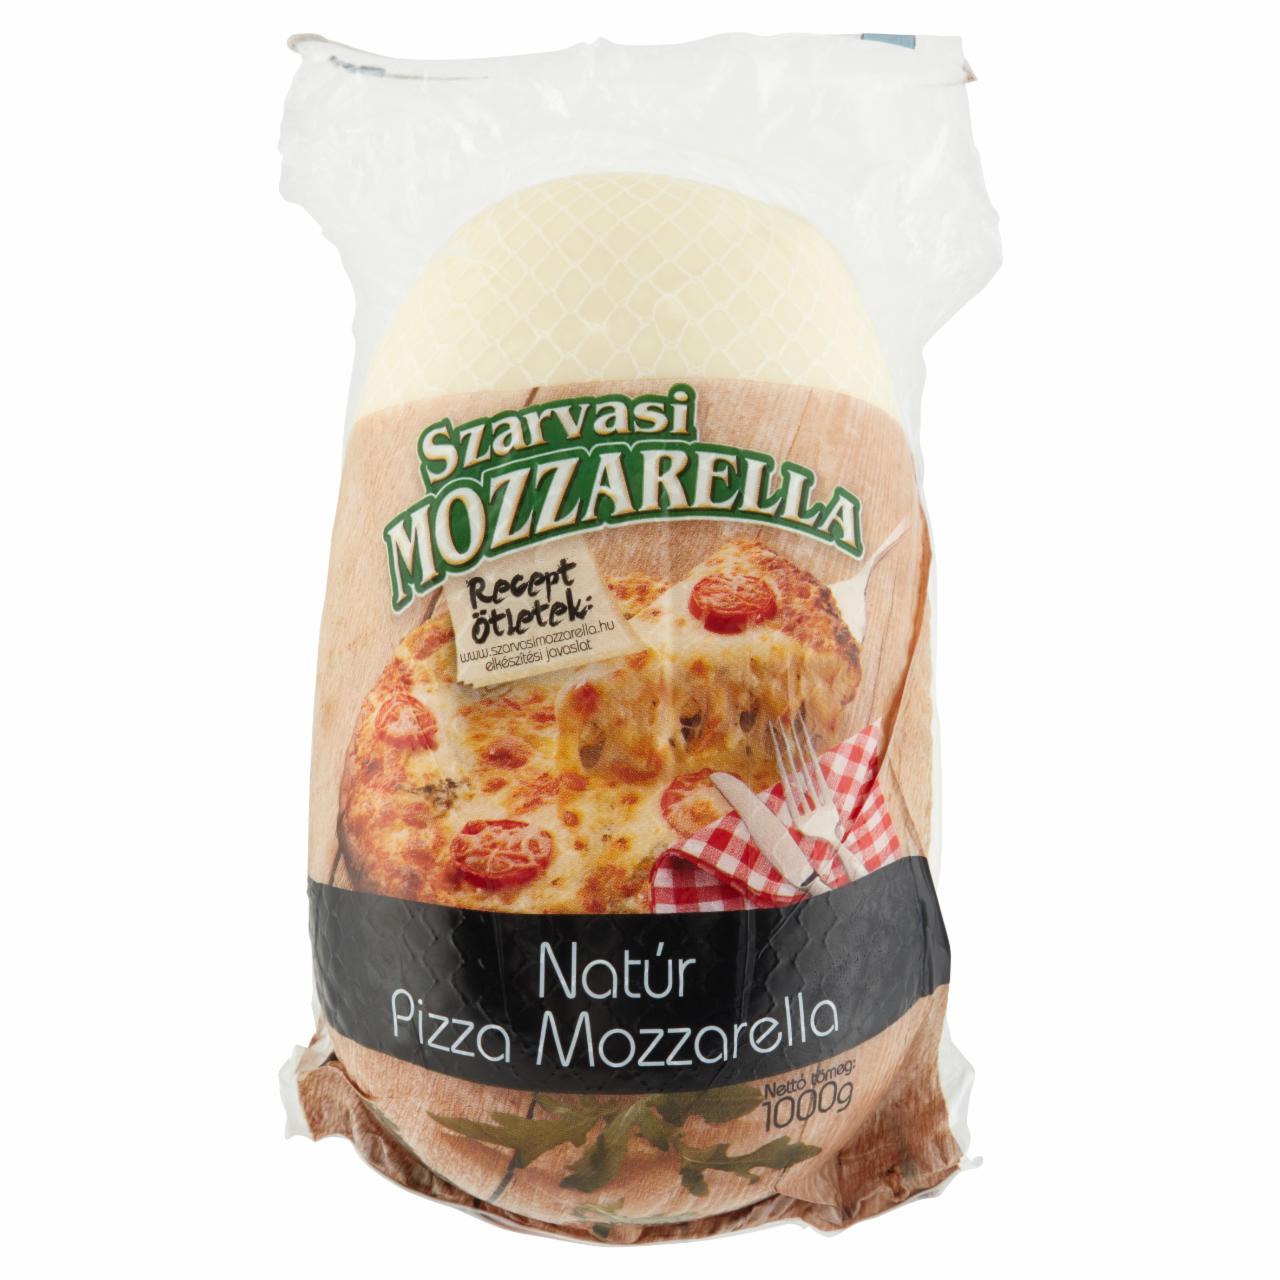 Képek - Szarvasi natúr pizza mozzarella sajt 1000 g